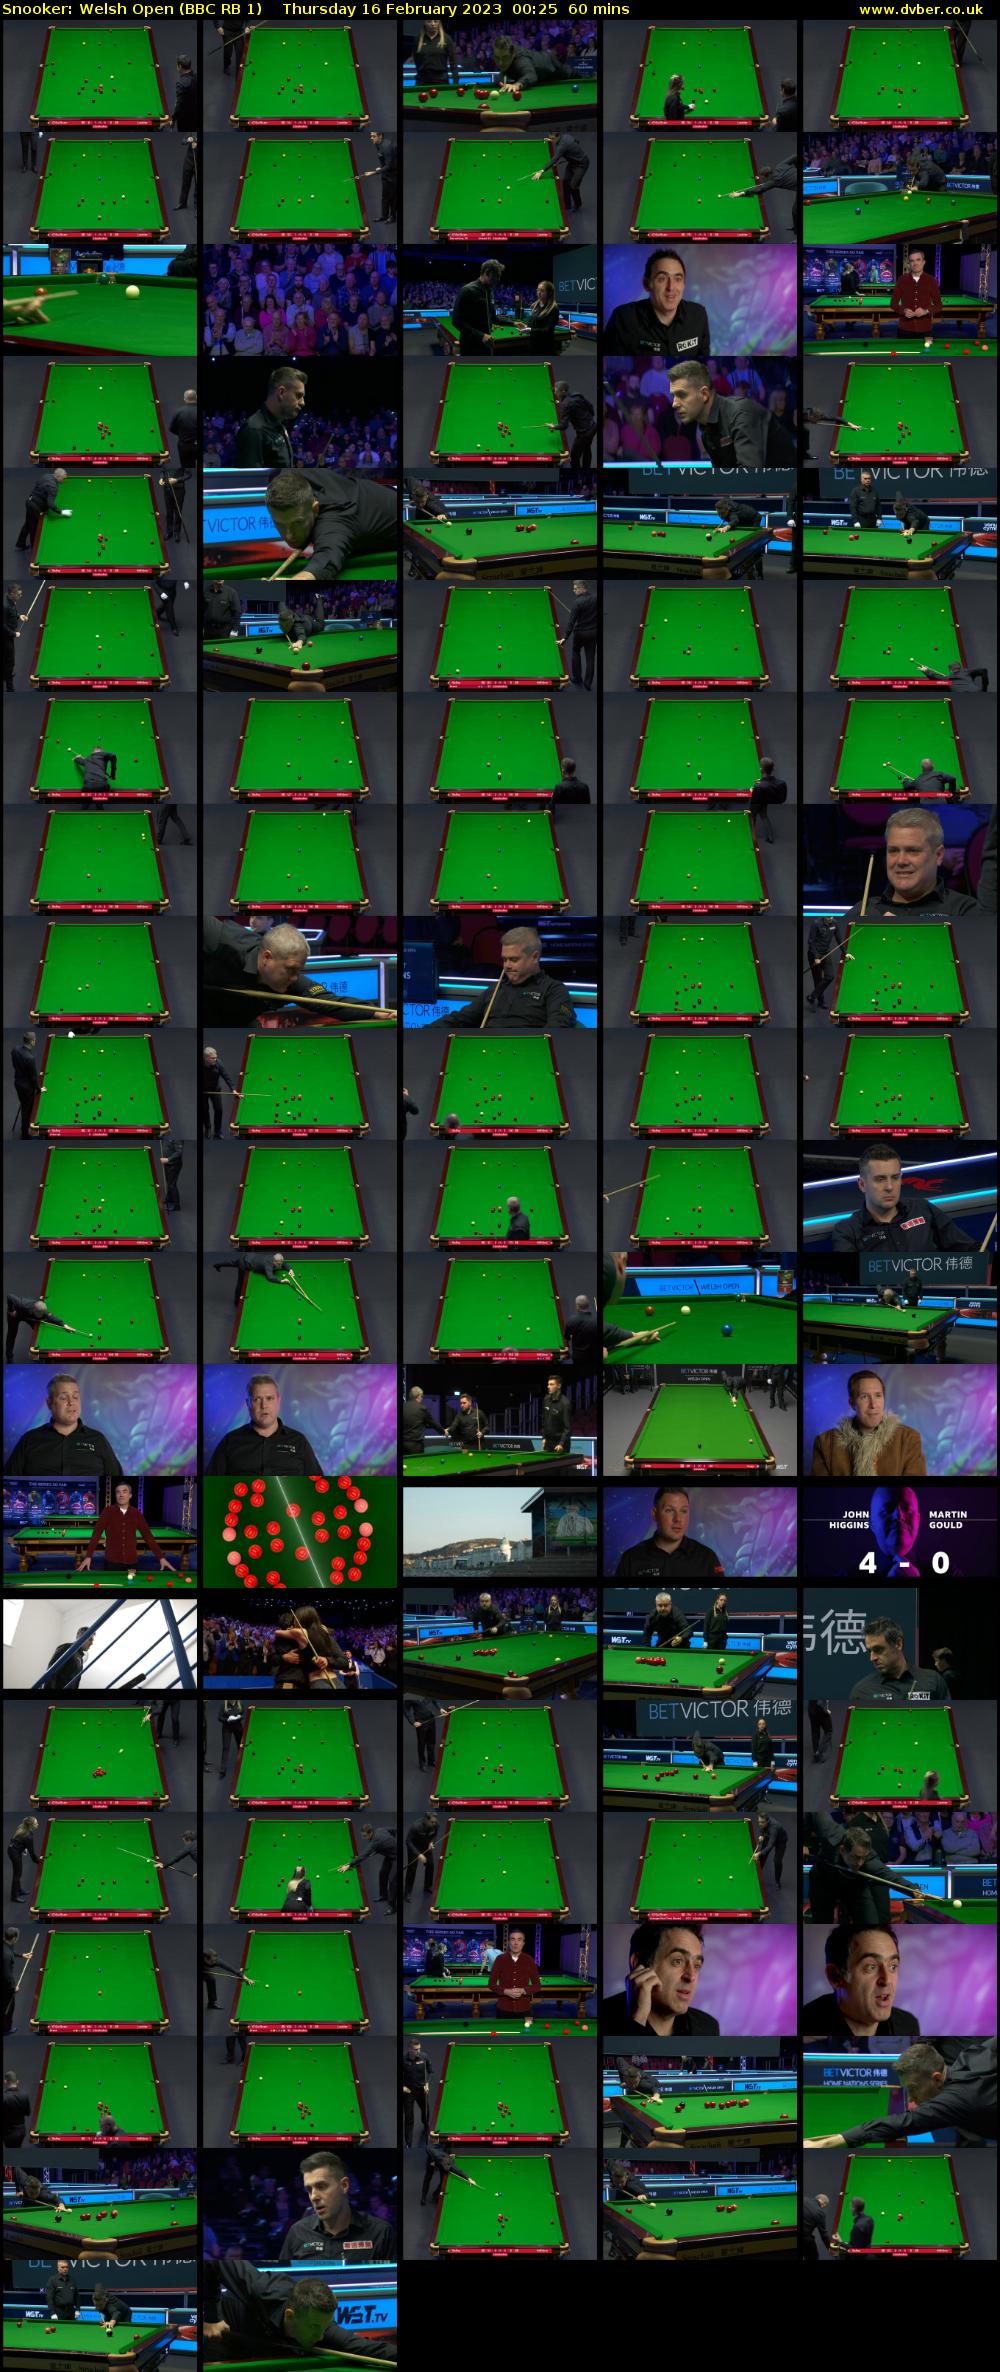 Snooker: Welsh Open (BBC RB 1) Thursday 16 February 2023 00:25 - 01:25